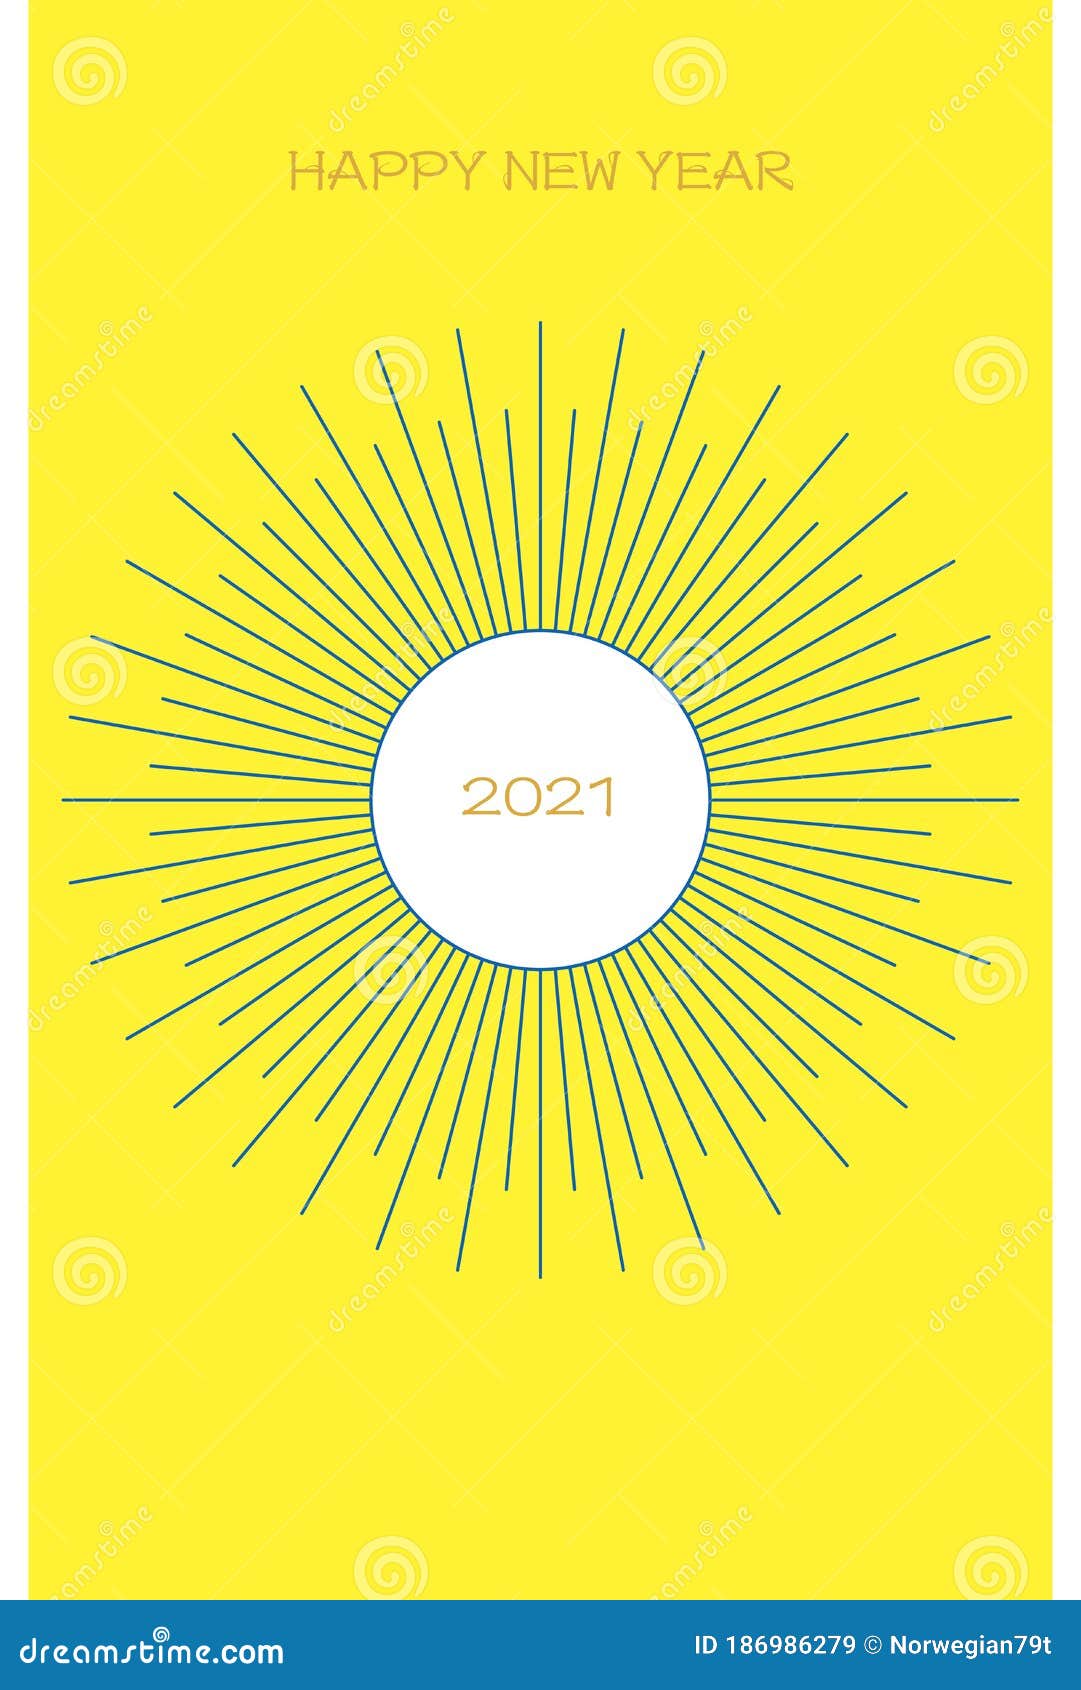 年賀状 初日の出 黄色と紺new Year Card First Sunrise Yellow And Dark Blue Design Stock Vector Illustration Of Japanese Card